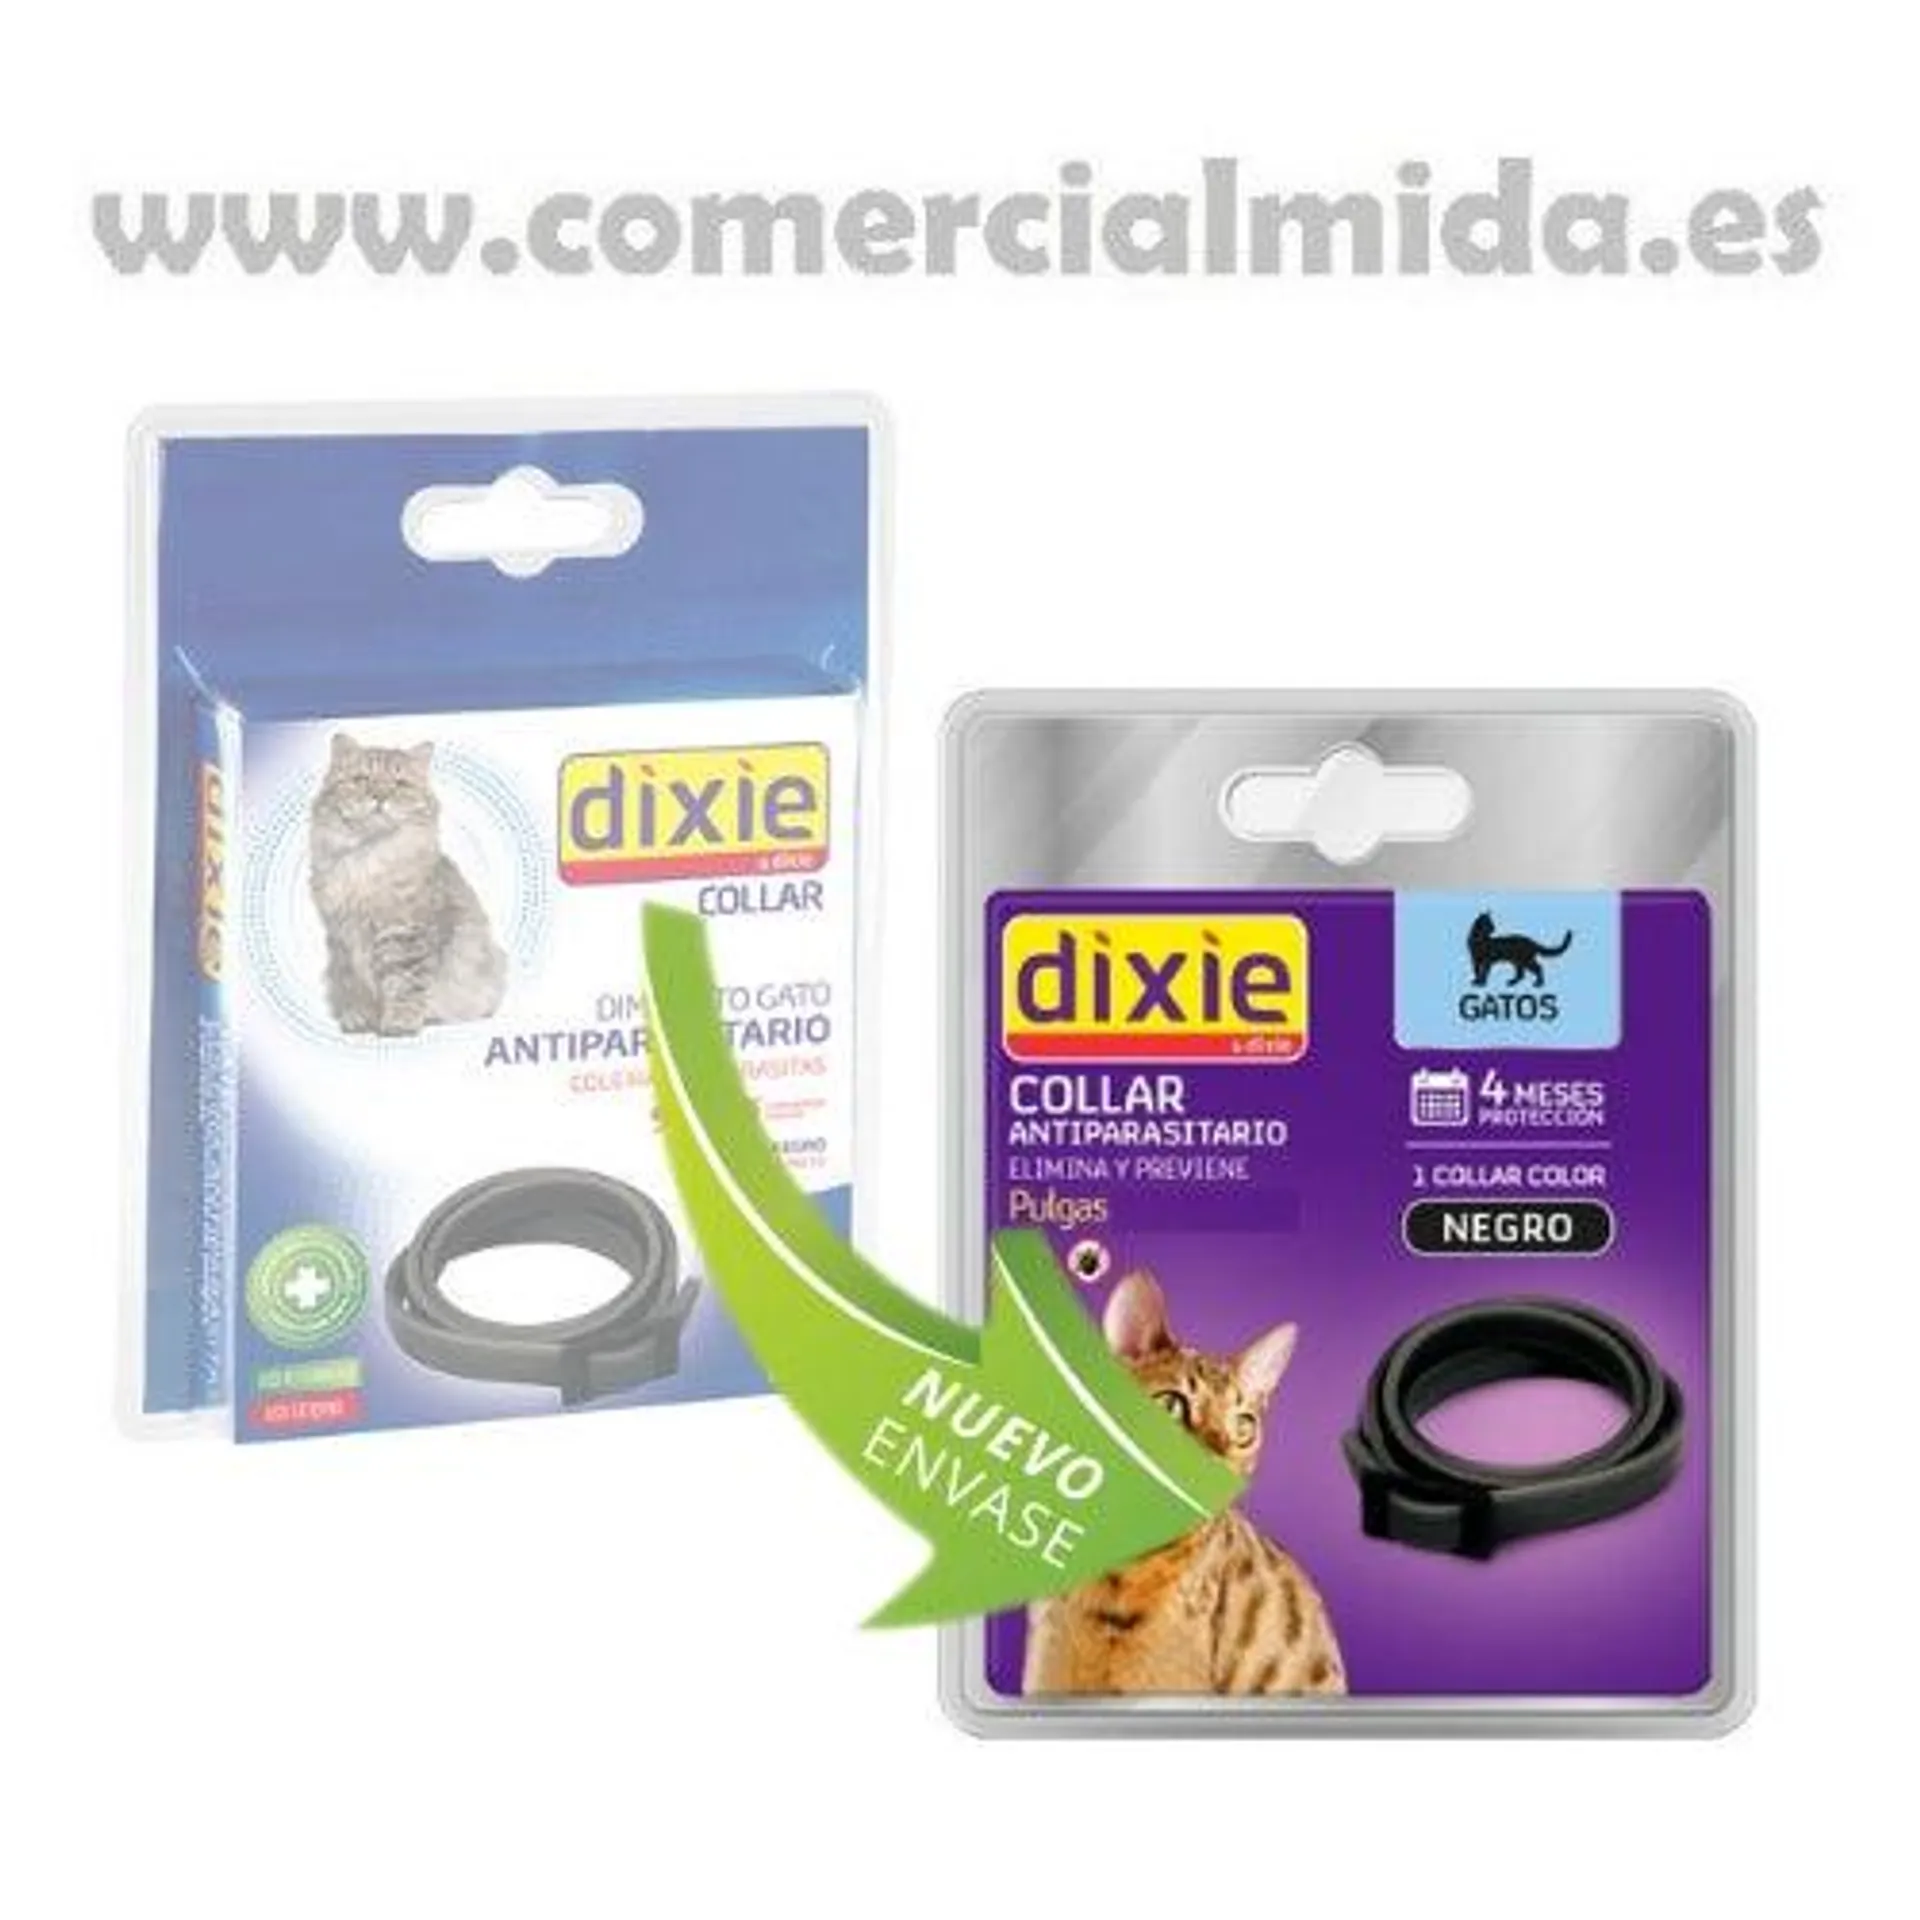 DIXIE Collar Antiparasitario Pulgas y Garrapatas para Gatos, Color Negro